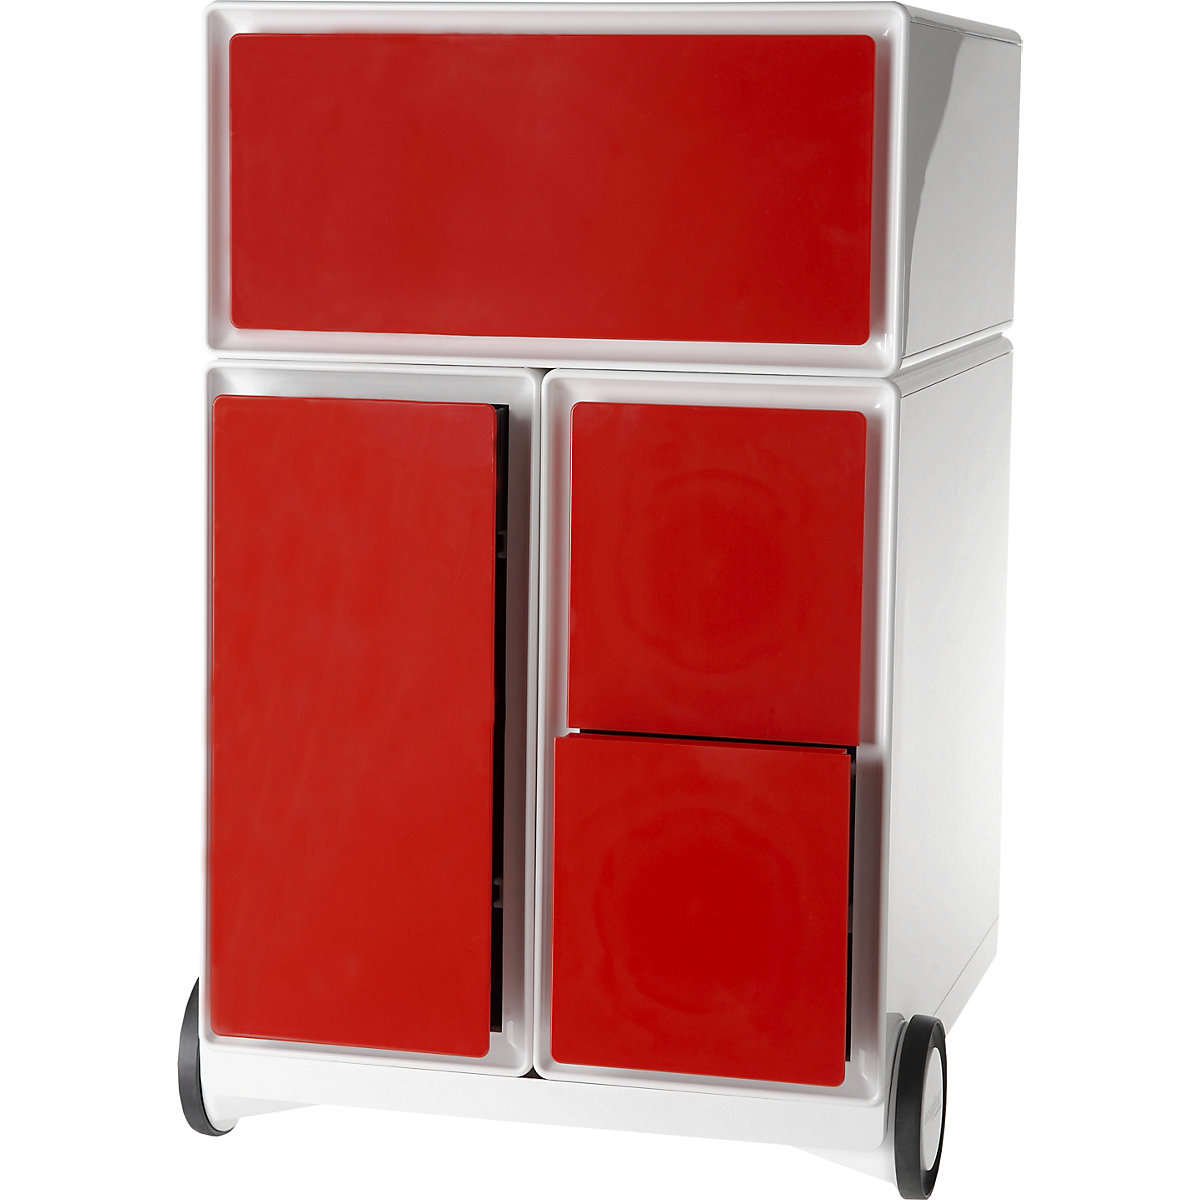 Paperflow – Buck rodante easyBox®, 1 cajón, 1 cajón para archivadores colgantes, 2 cajones para CD, blanco / rojo